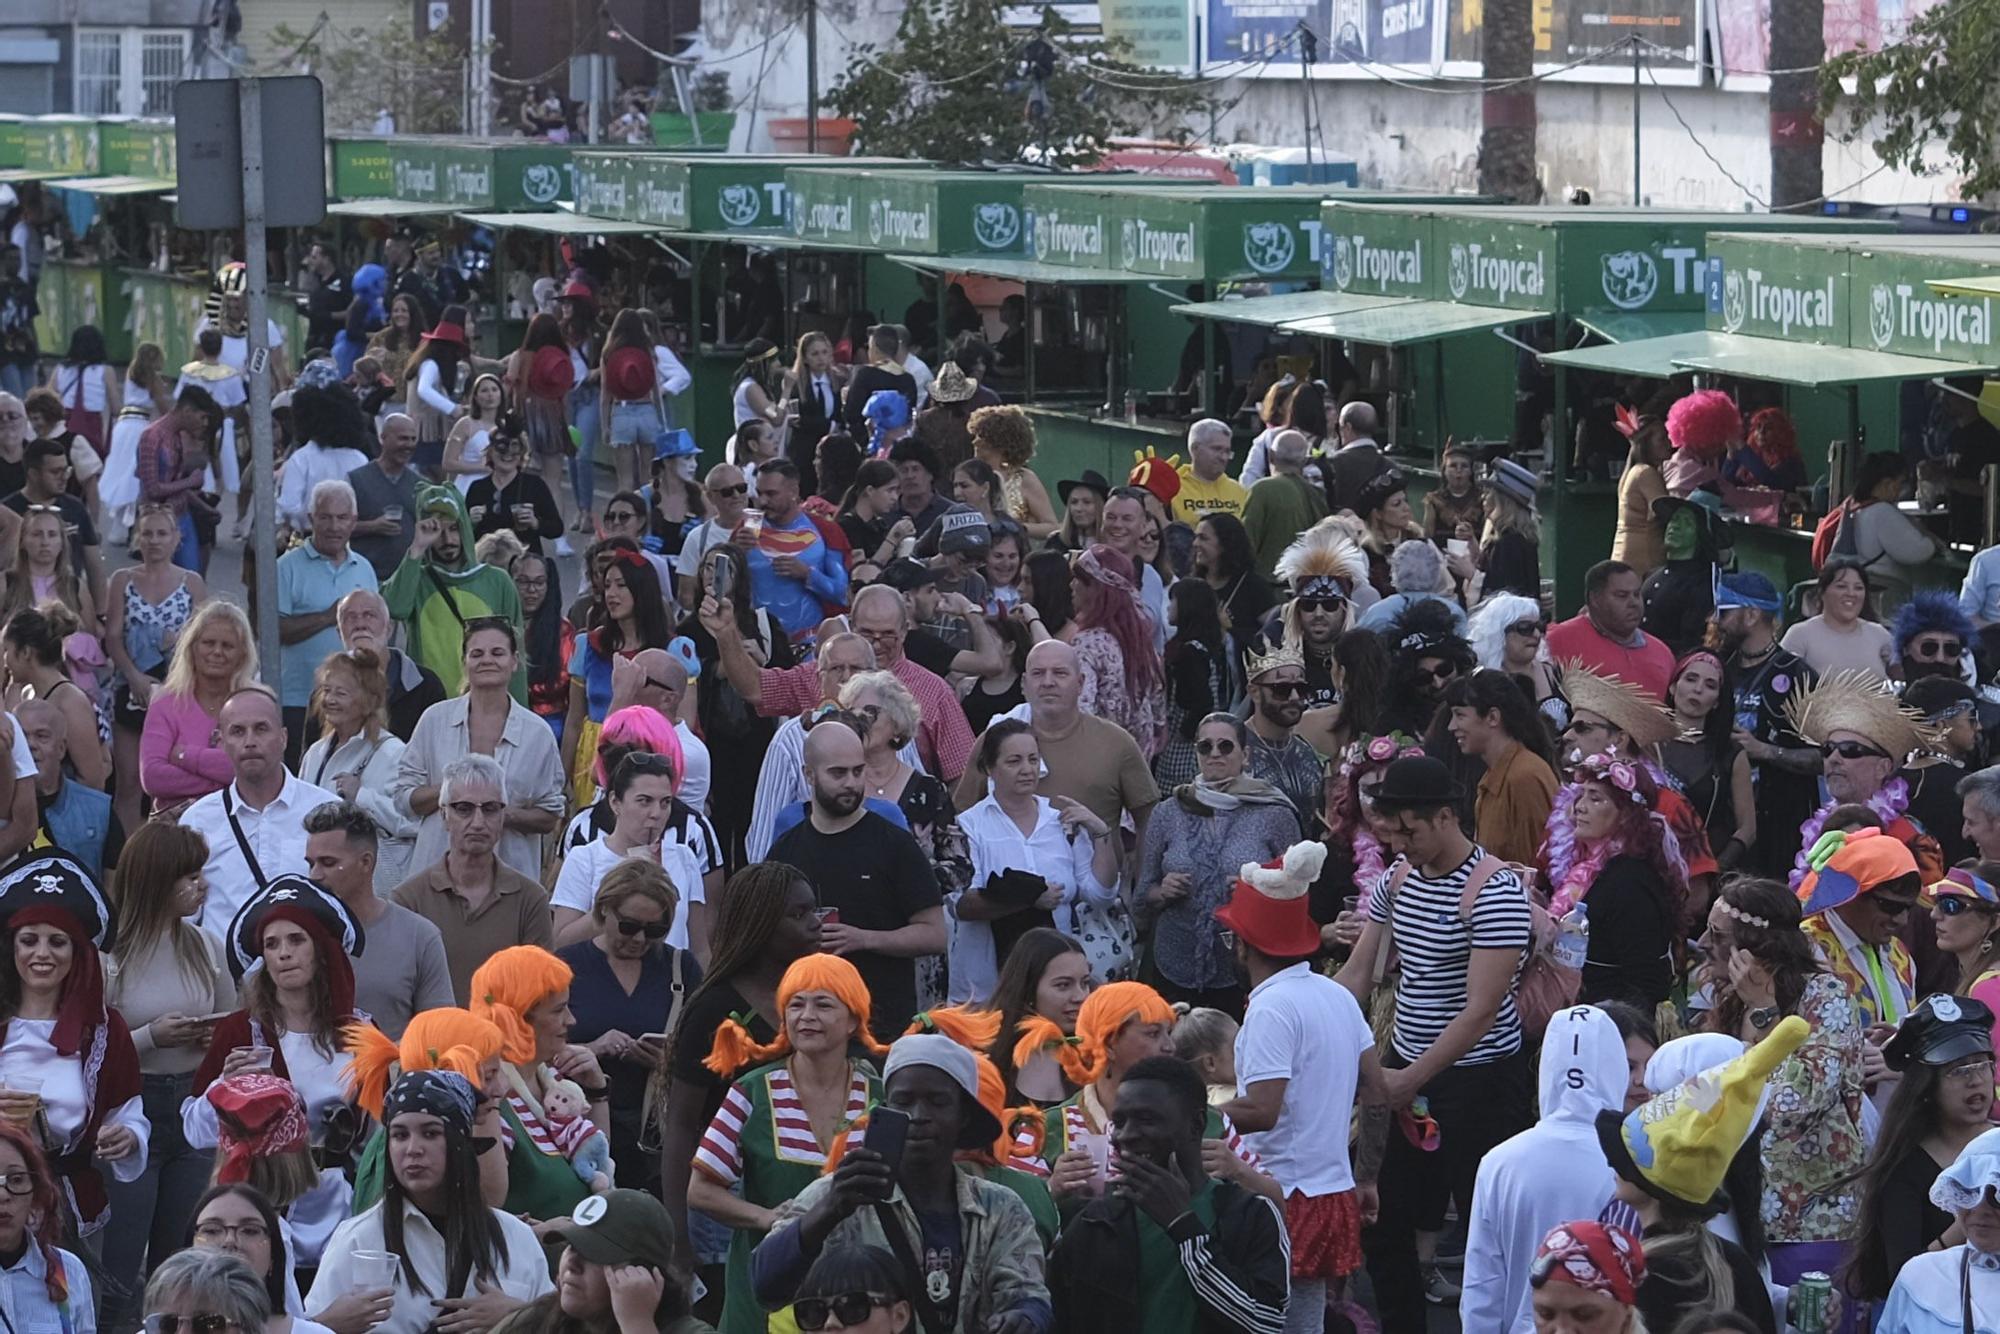 Carnaval de Día de Las Palmas de Gran Canaria